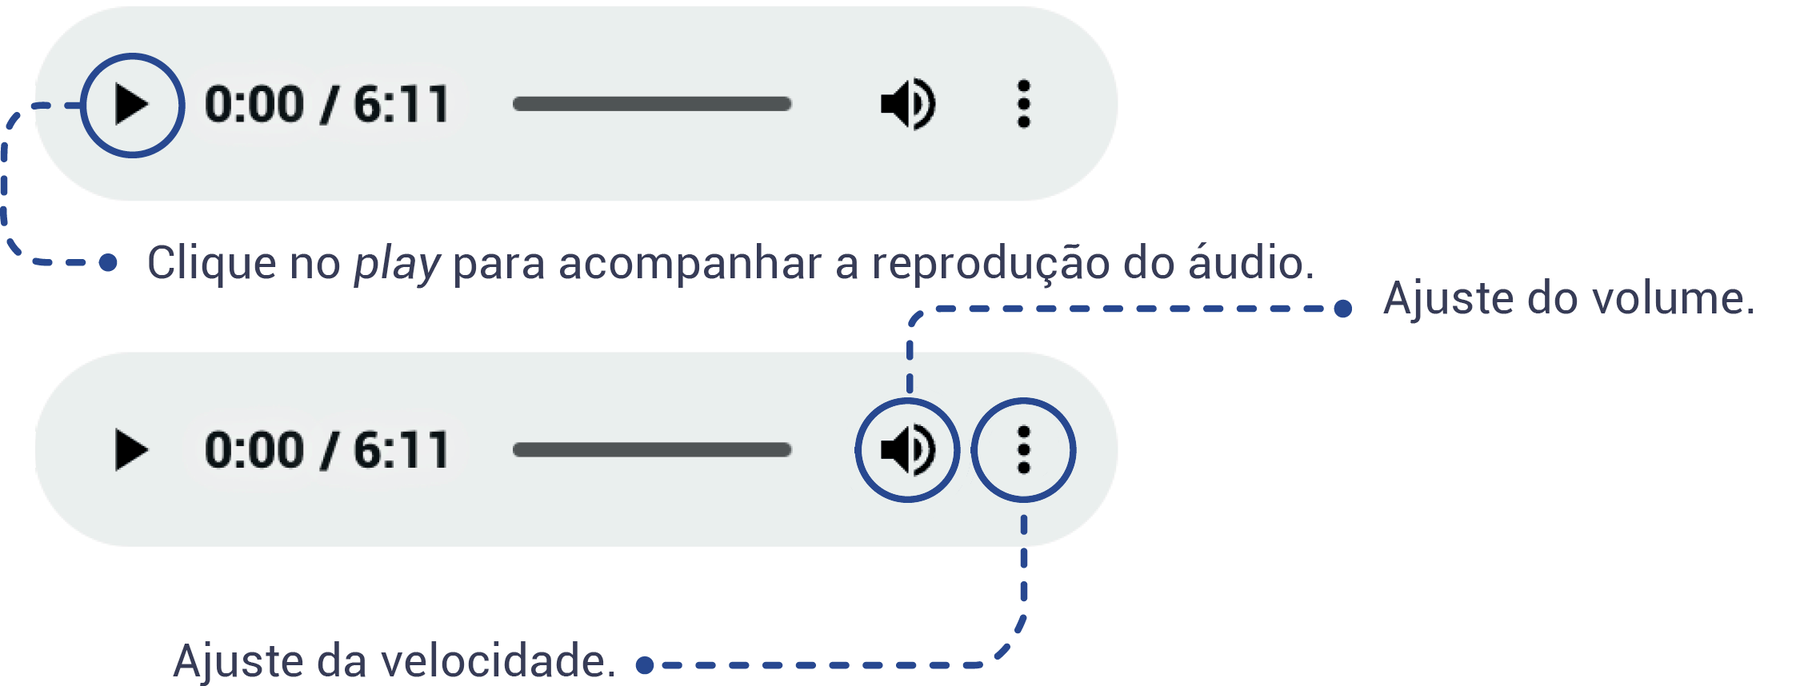 Esquema mostrando como deve ser feita a navegação do objeto digital de áudio, indicando que o ícone play deve ser clicado para acompanhar a reprodução do áudio, o ícone de som deve ser usado para o ajuste de volume e o ícone com três pontos alinhados verticalmente serve para o ajuste da velocidade do áudio.